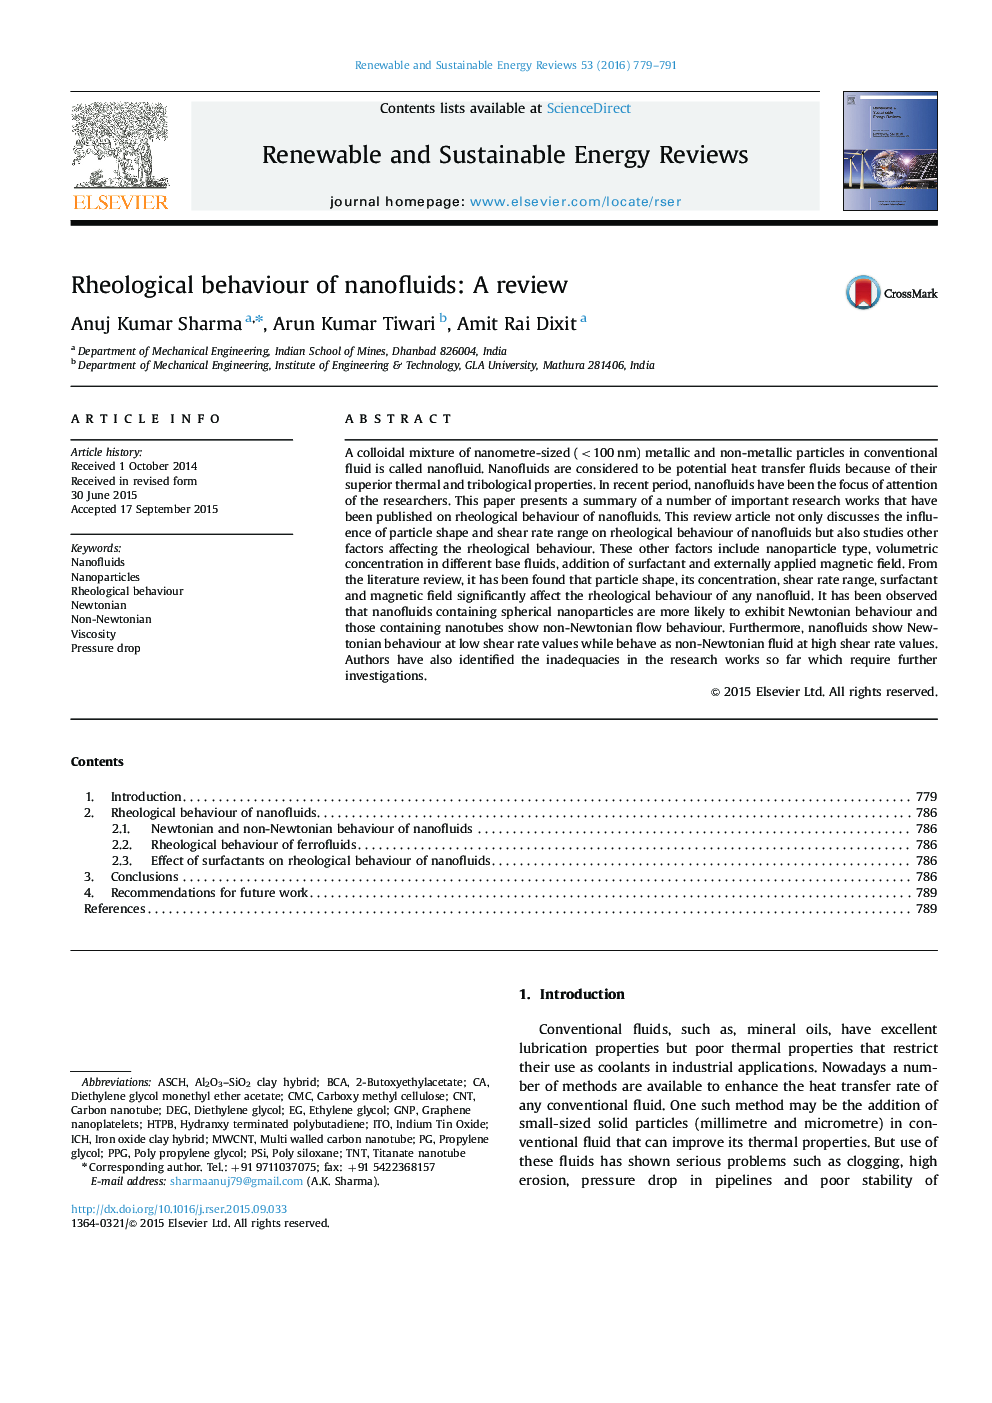 Rheological behaviour of nanofluids: A review